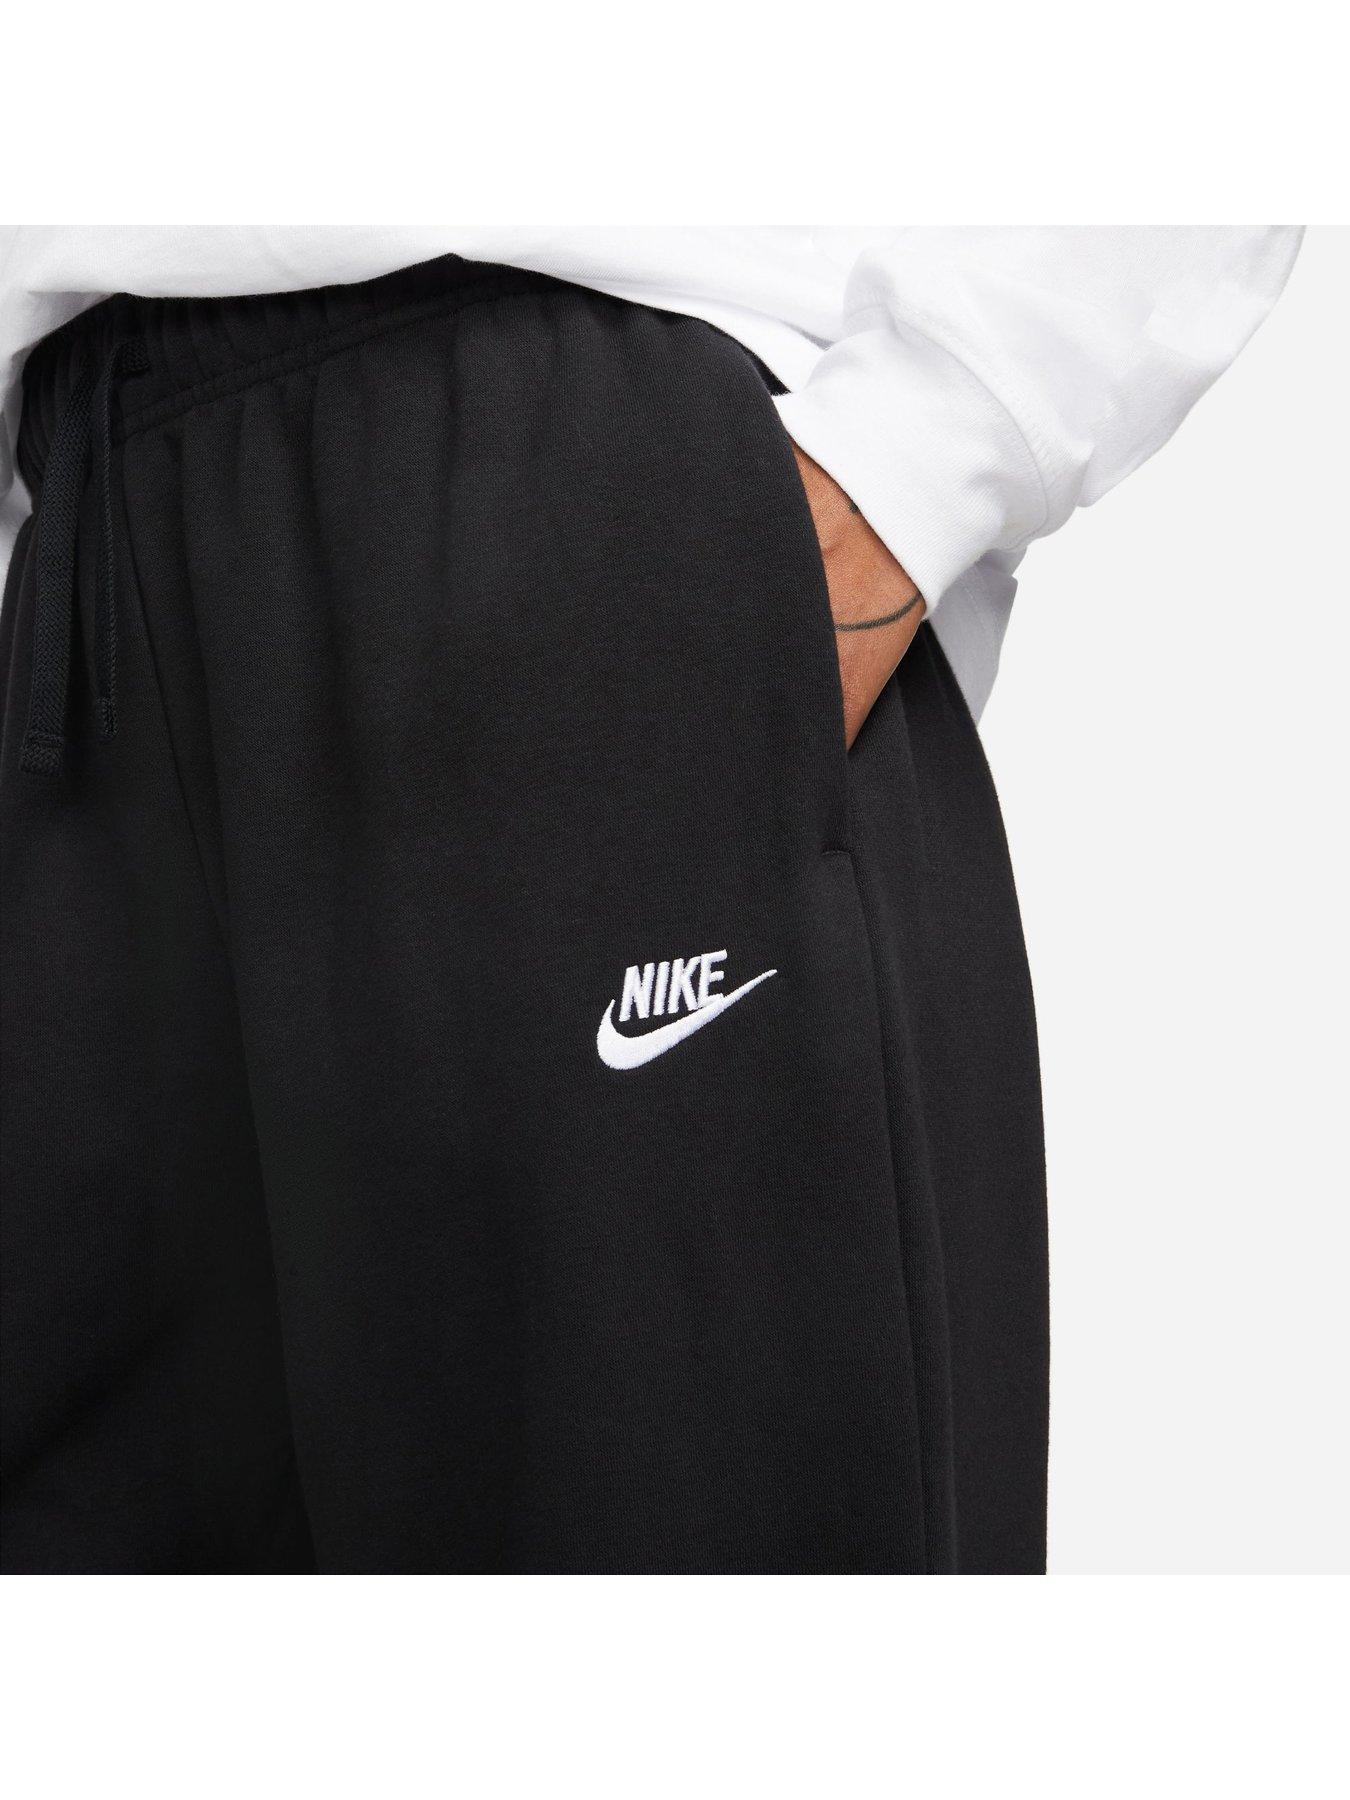 Nike Plus mini swoosh oversized jogger in black